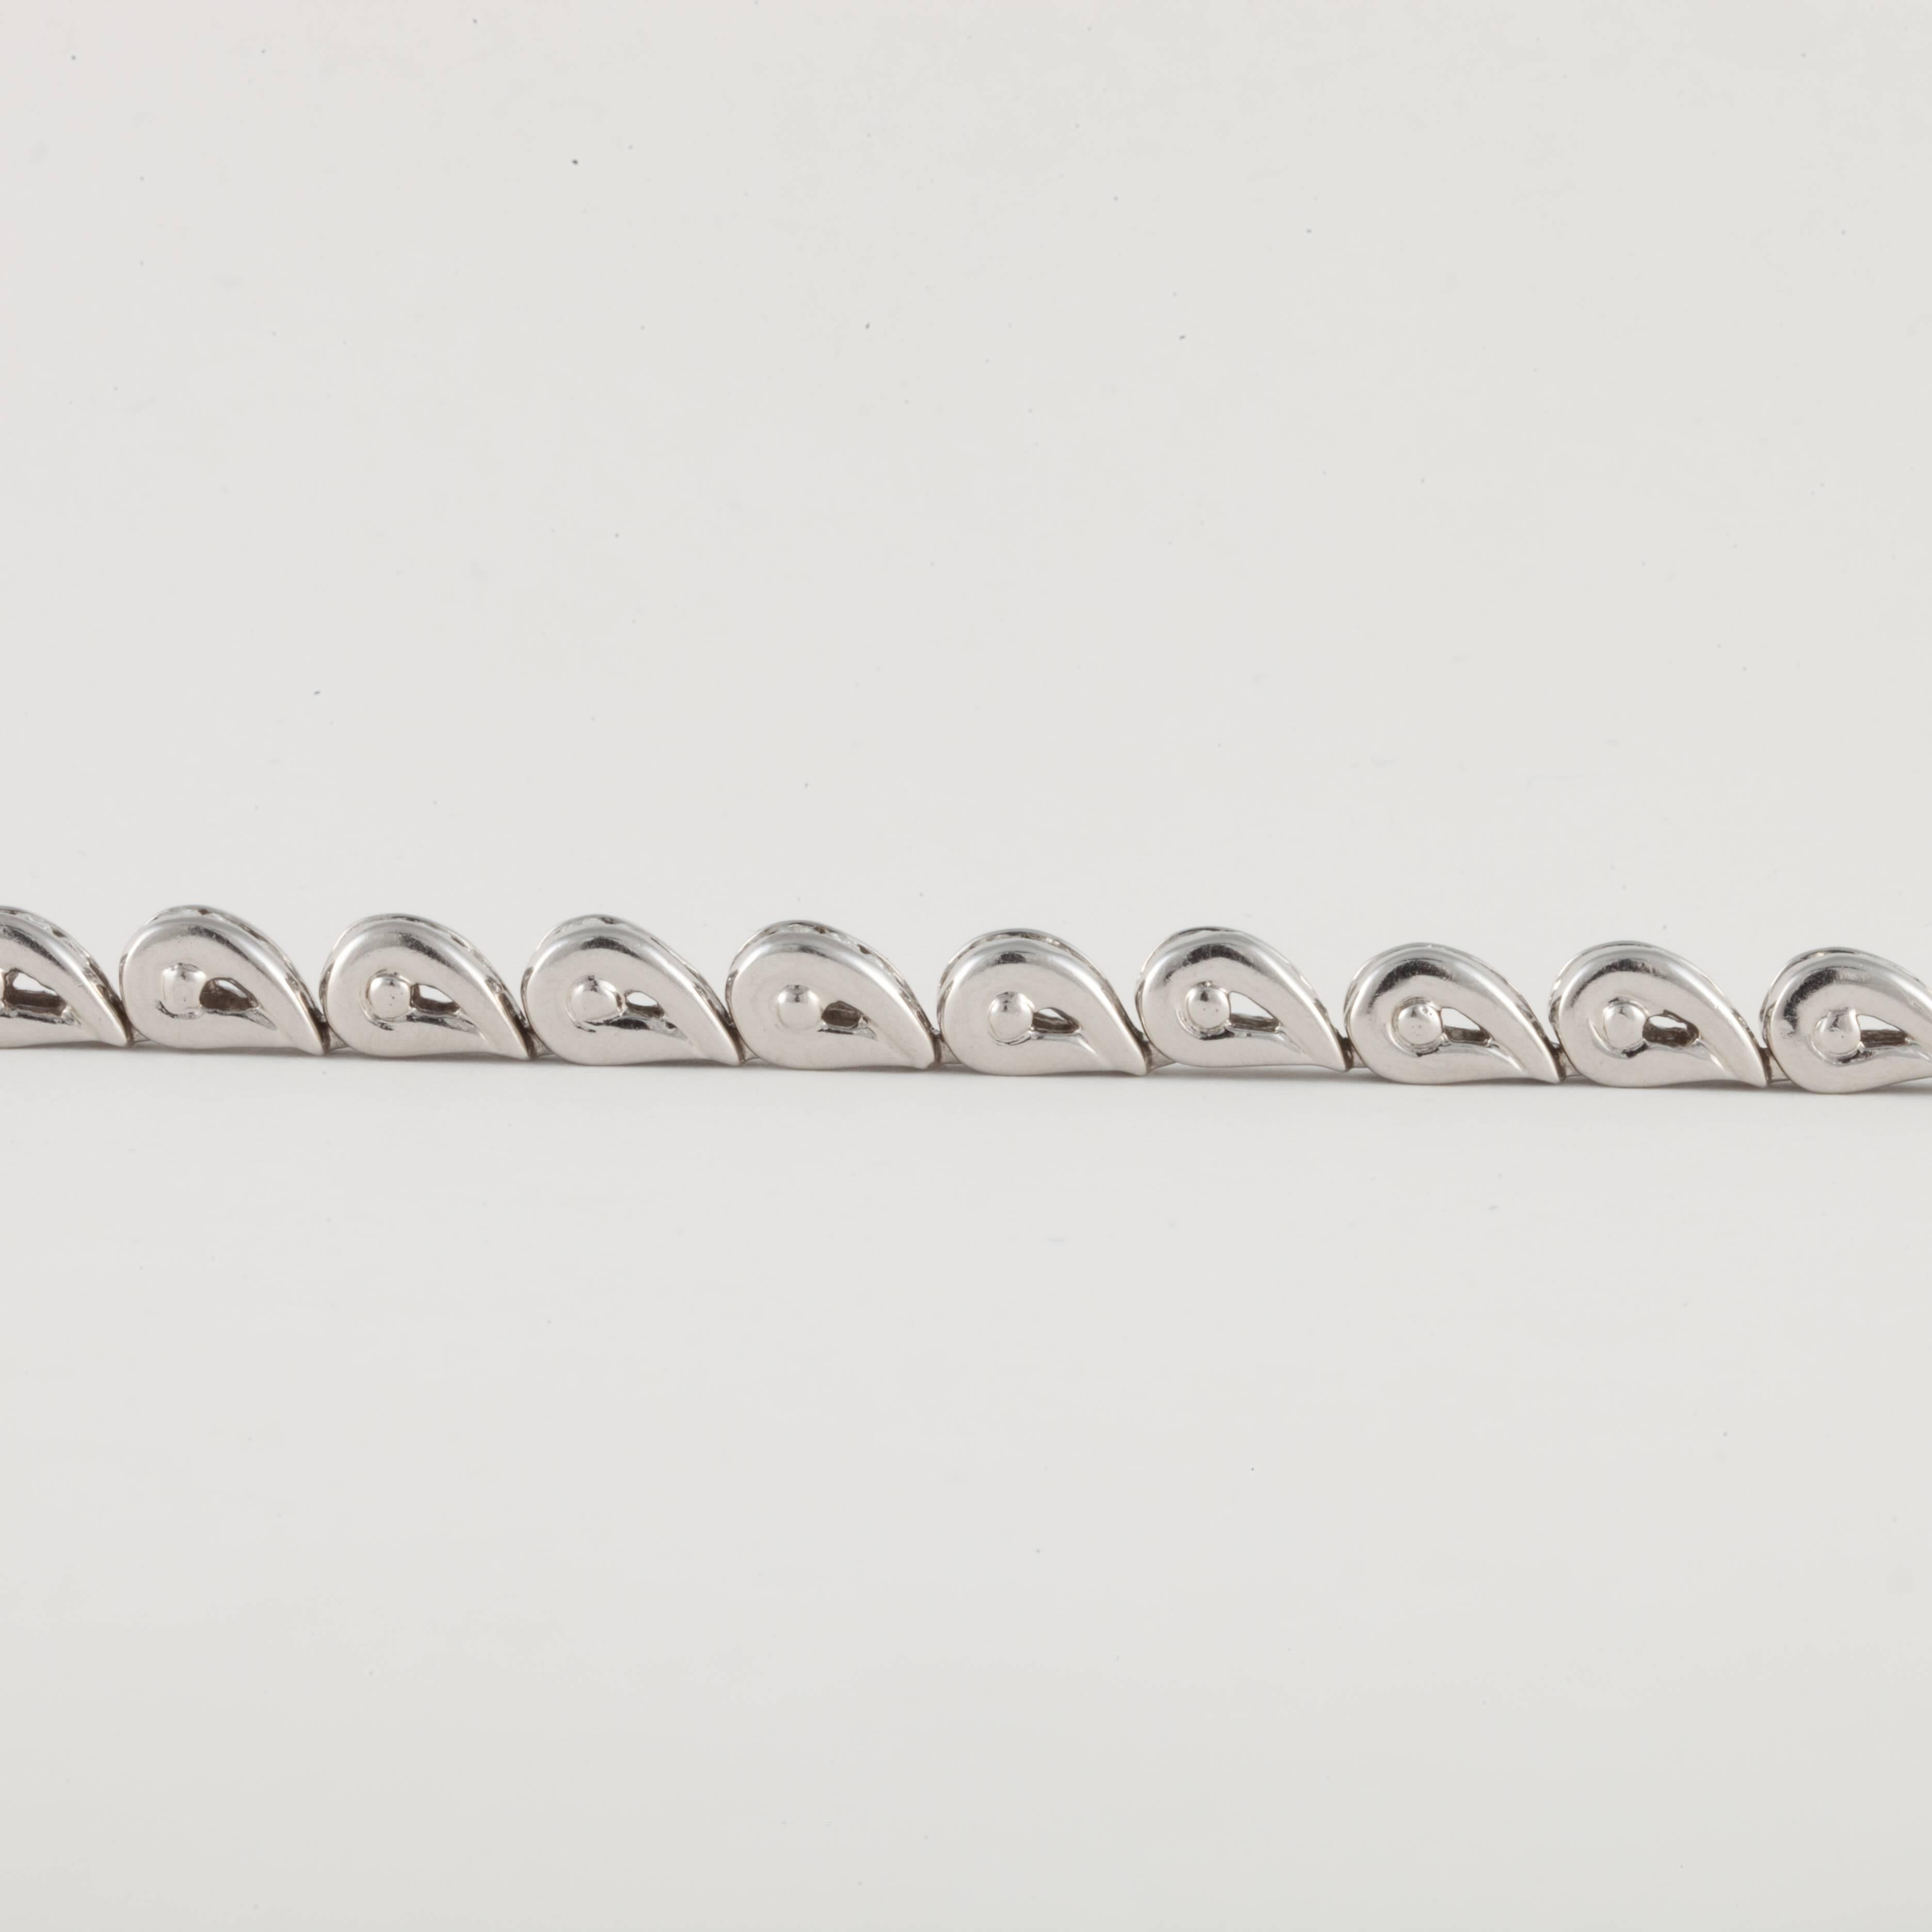 Bracelet de la ligne Charles Krypell réalisé en platine, avec 100 diamants ronds de taille brillant pesant 3.85 carats, couleur E-F et pureté VVS2-VS1.  Il mesure 7 pouces de long, 3/16 pouces de large et il se tient à 1/4 pouce du poignet.  